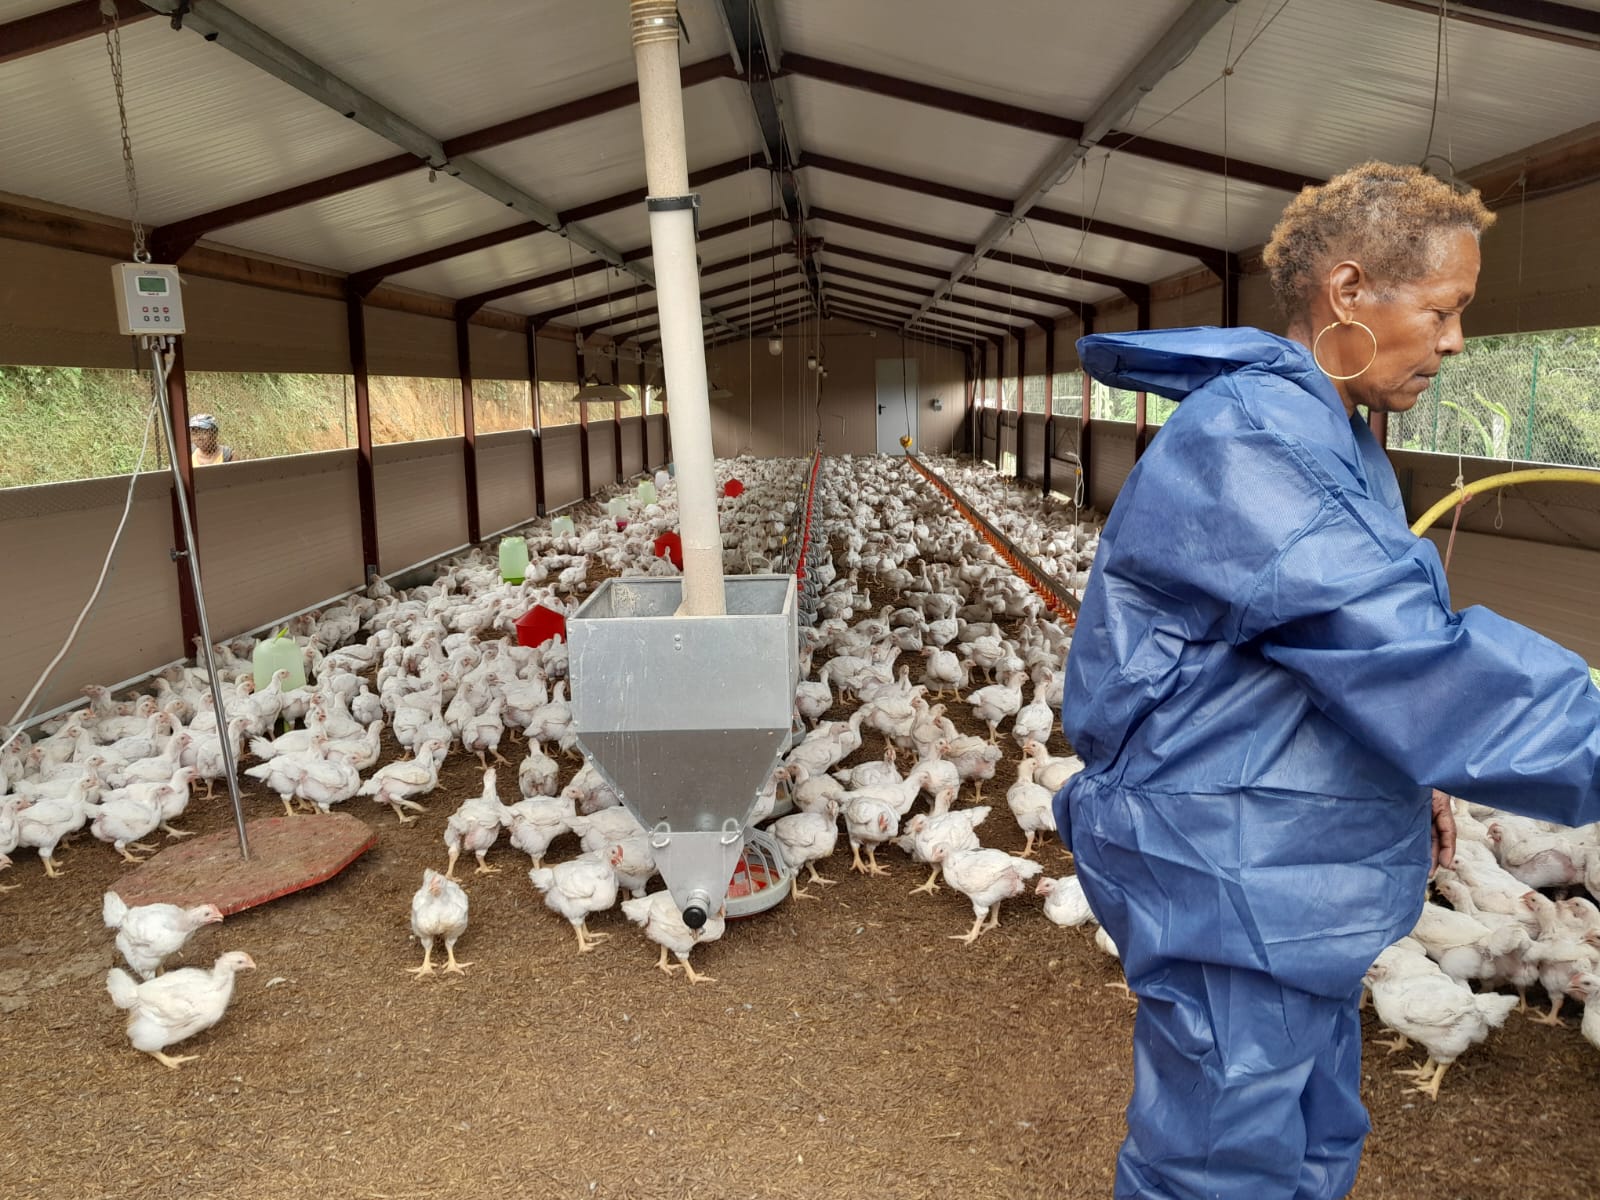     A la découverte du poulet bô kay élevé en Martinique

